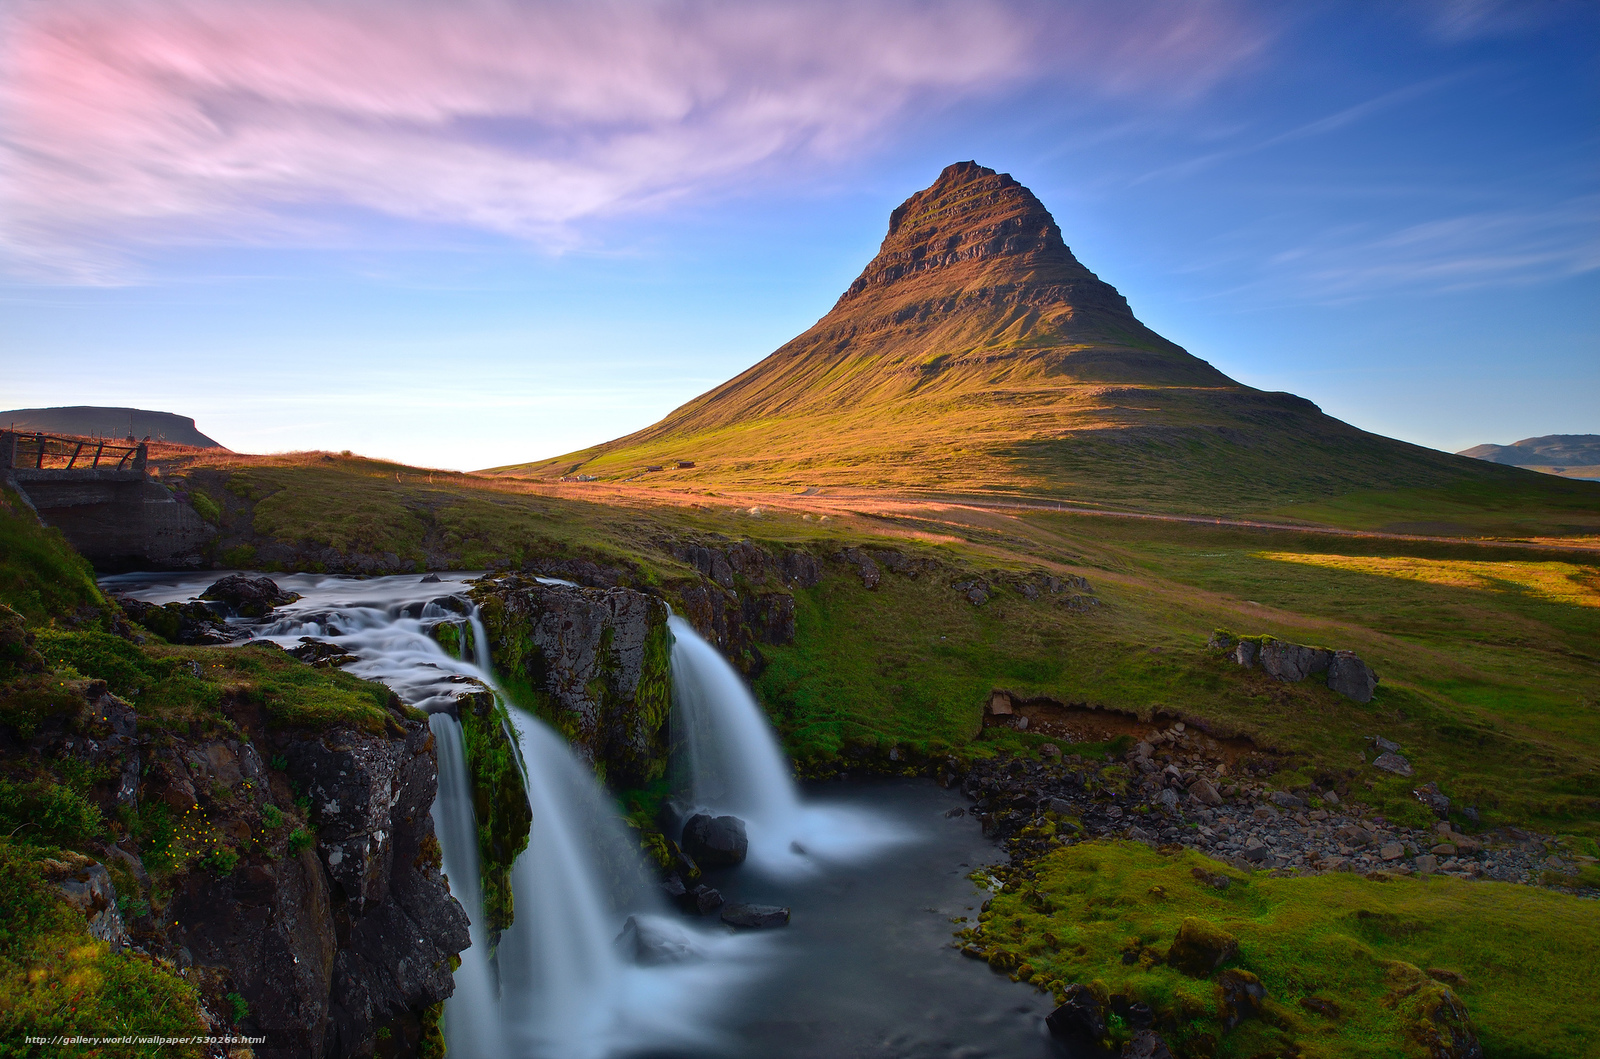 Hình nền Iceland với khung cảnh thiên nhiên tuyệt đẹp từ thác nước Kirkjufellsfoss sẽ đưa bạn đến một thế giới hoang sơ, ma mị và đầy kỳ quan. Với góc nhìn và màu sắc sống động, hình nền này sẽ giúp bạn trở thành nhiếp ảnh gia chuyên nghiệp chỉ trong một khoảnh khắc.